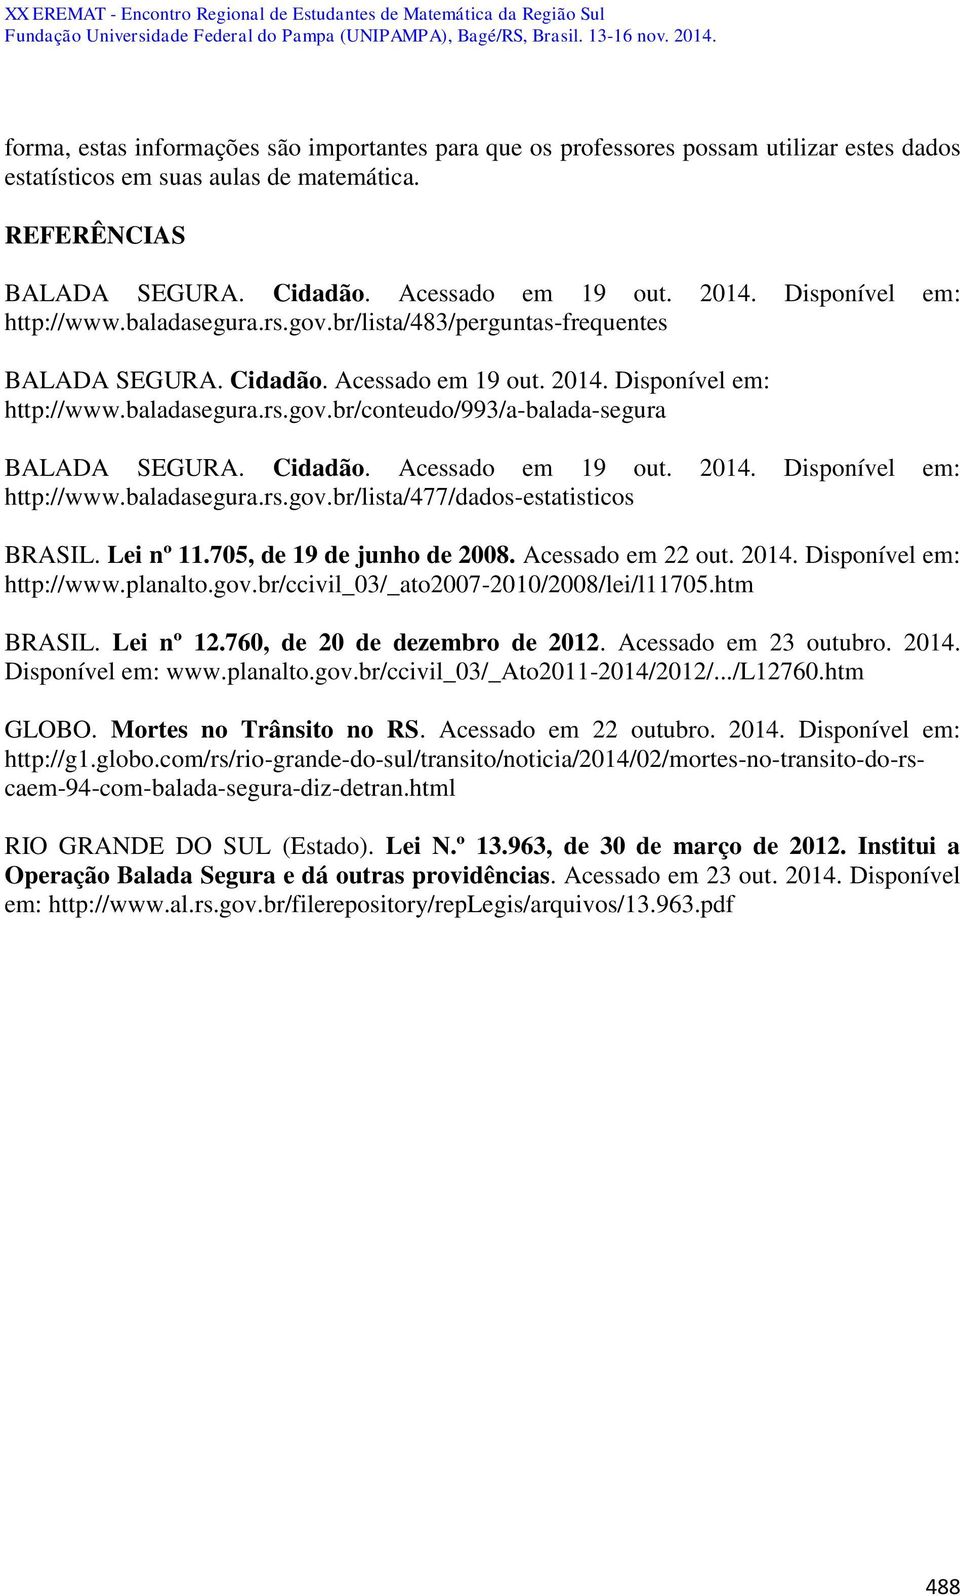 Cidadão. Acessado em 19 out. 2014. Disponível em: http://www.baladasegura.rs.gov.br/lista/477/dados-estatisticos BRASIL. Lei nº 11.705, de 19 de junho de 2008. Acessado em 22 out. 2014. Disponível em: http://www.planalto.